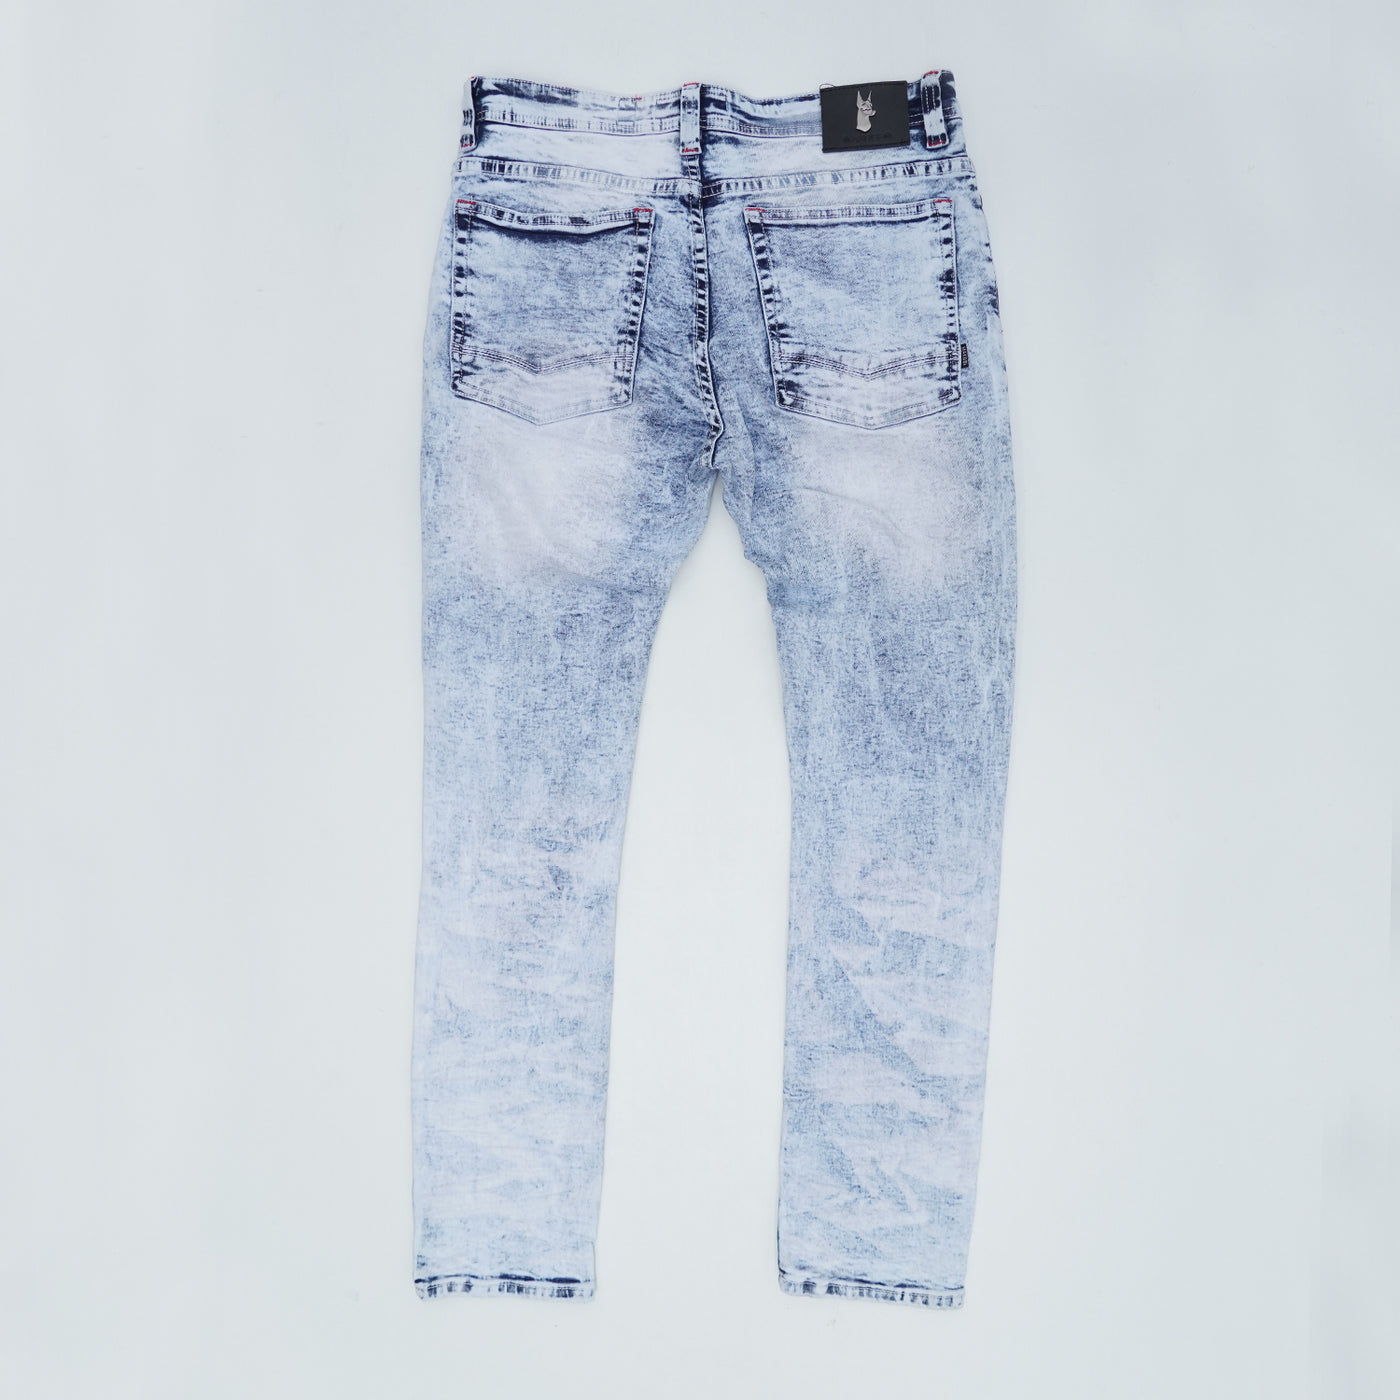 M1970 Ashton Shredded Jeans- Light Wash